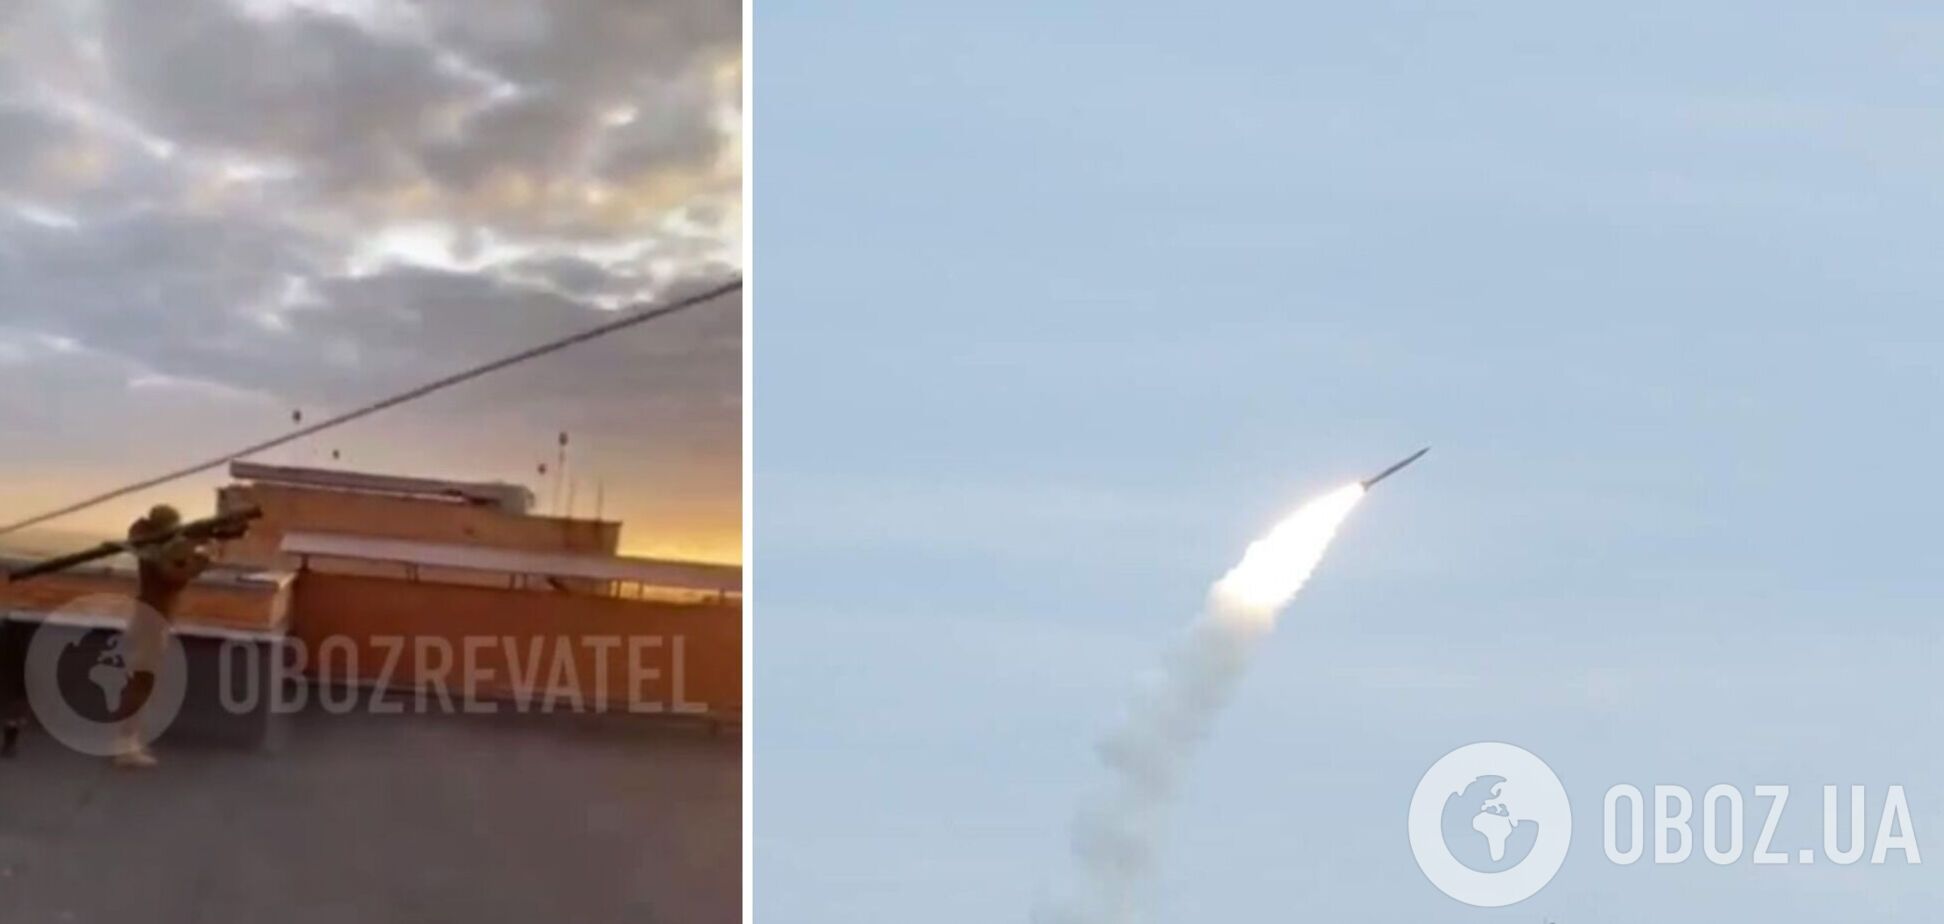 Точно в цель: бойцы Нацгвардии сбили крылатую ракету на подлете к Киеву выстрелом из ПЗРК 'Игла'. Видео момента